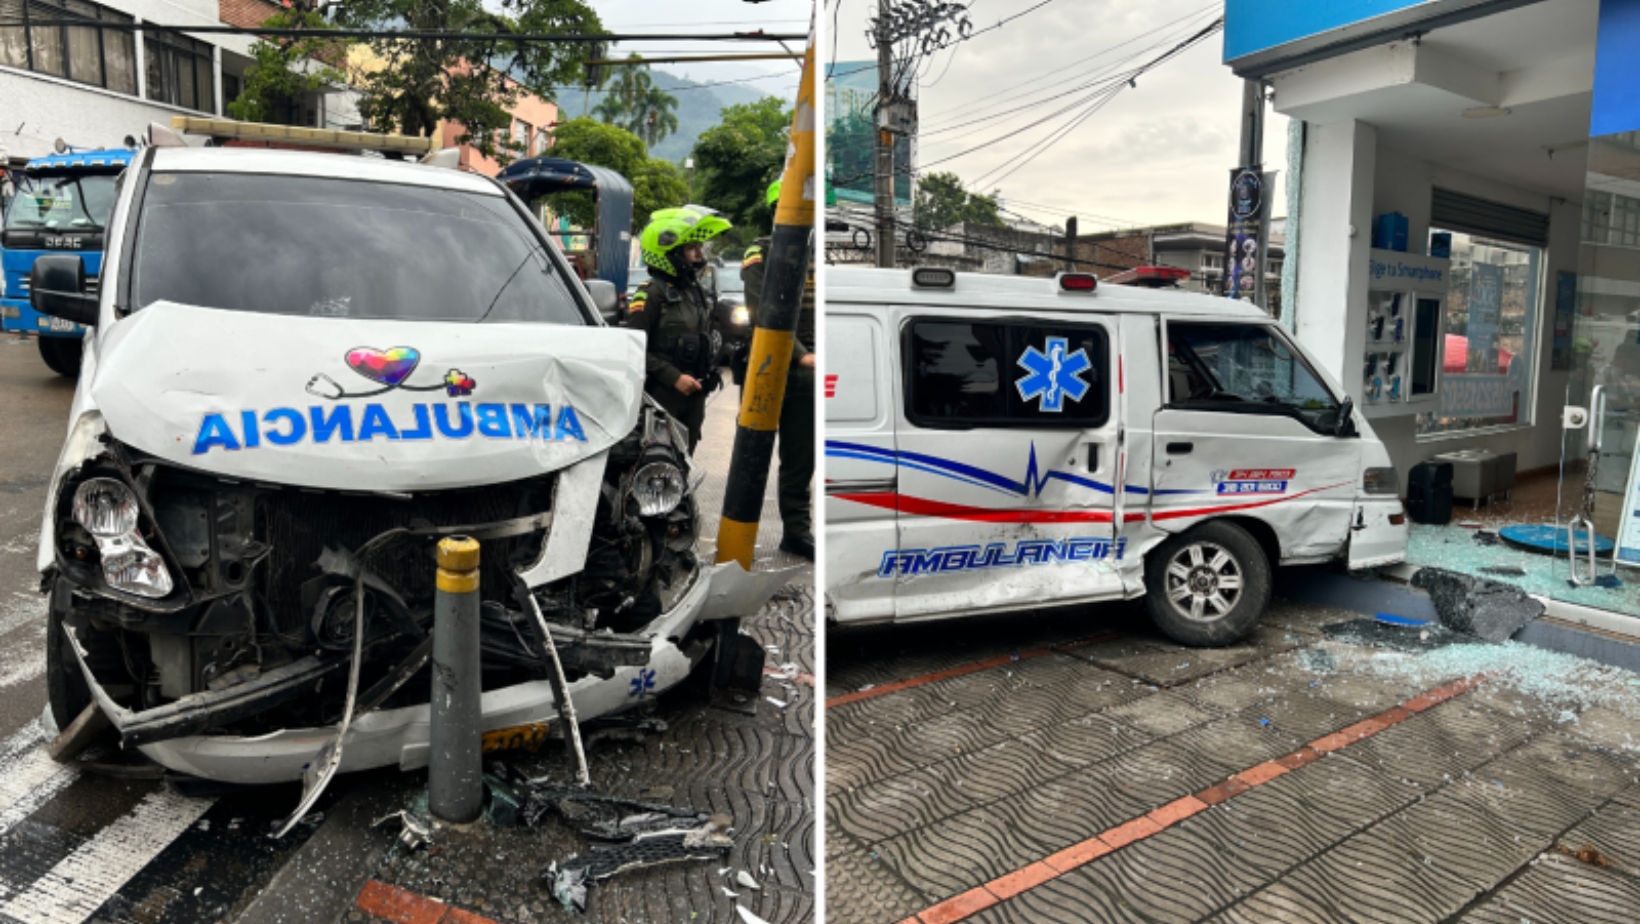 Fuerte colisión entre ambulancias causa daños a local comercial en el centro de Ibagué